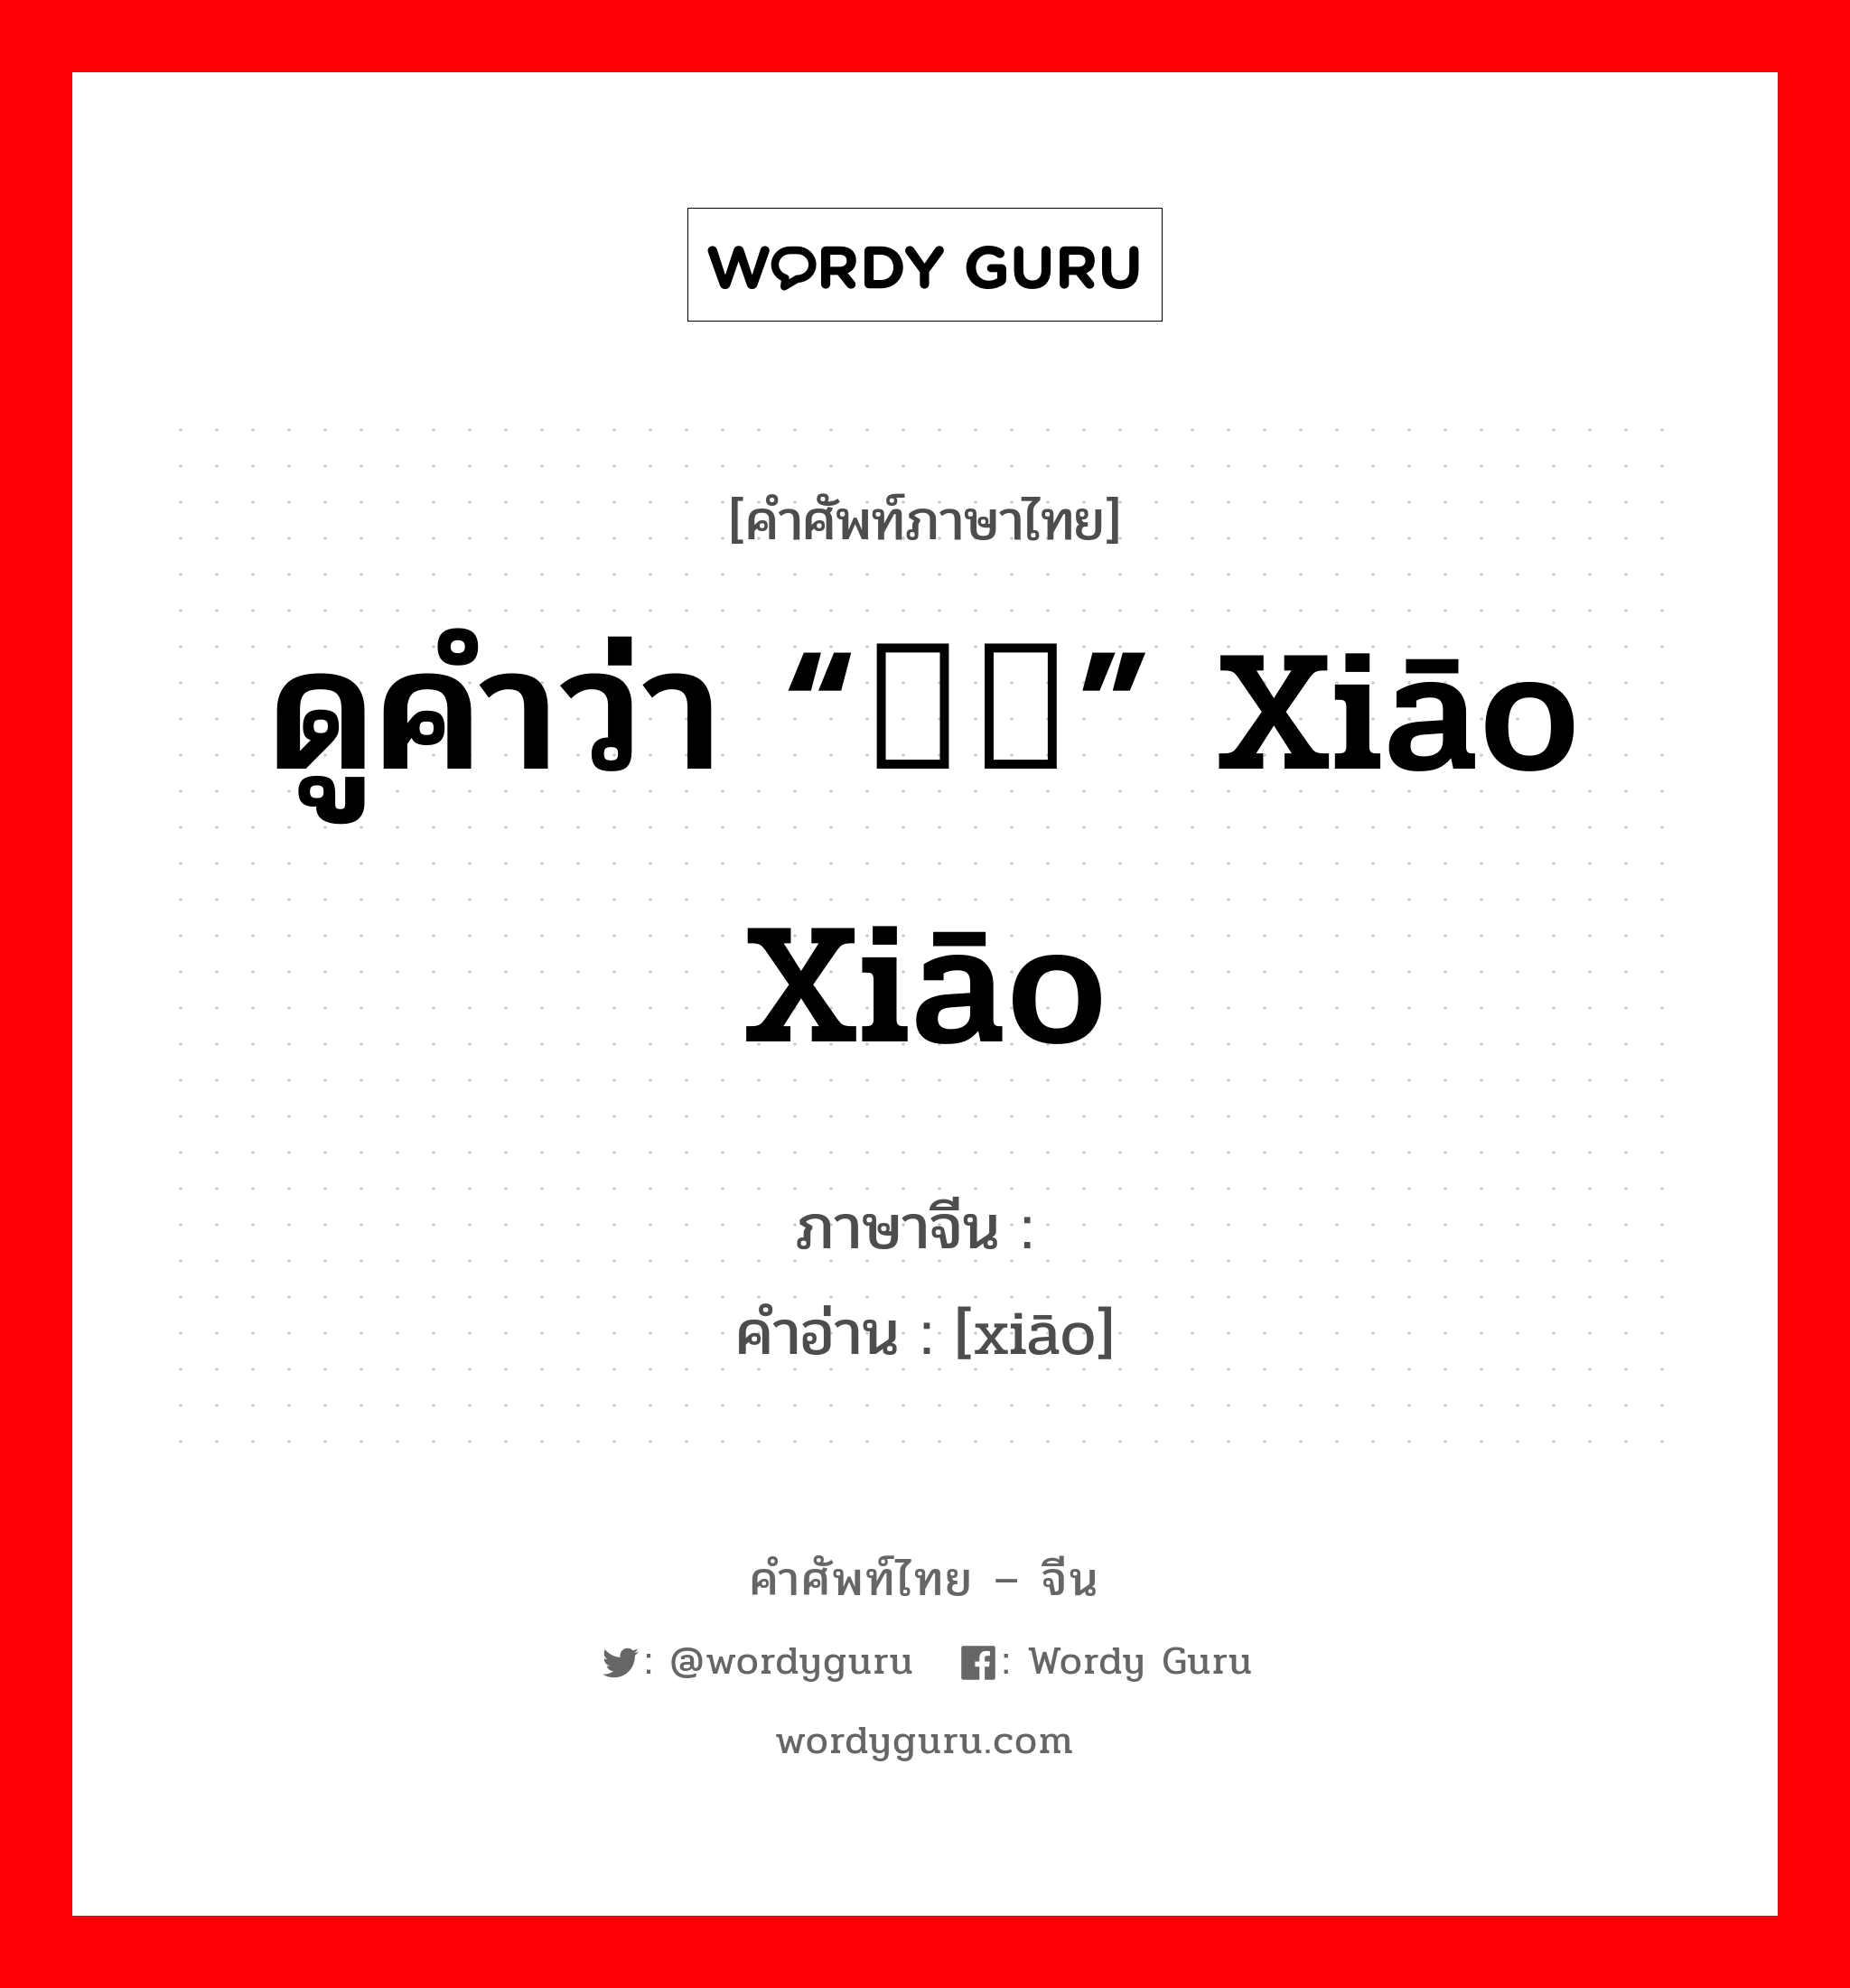 ดูคำว่า “哓哓” xiāo xiāo ภาษาจีนคืออะไร, คำศัพท์ภาษาไทย - จีน ดูคำว่า “哓哓” xiāo xiāo ภาษาจีน 哓 คำอ่าน [xiāo]